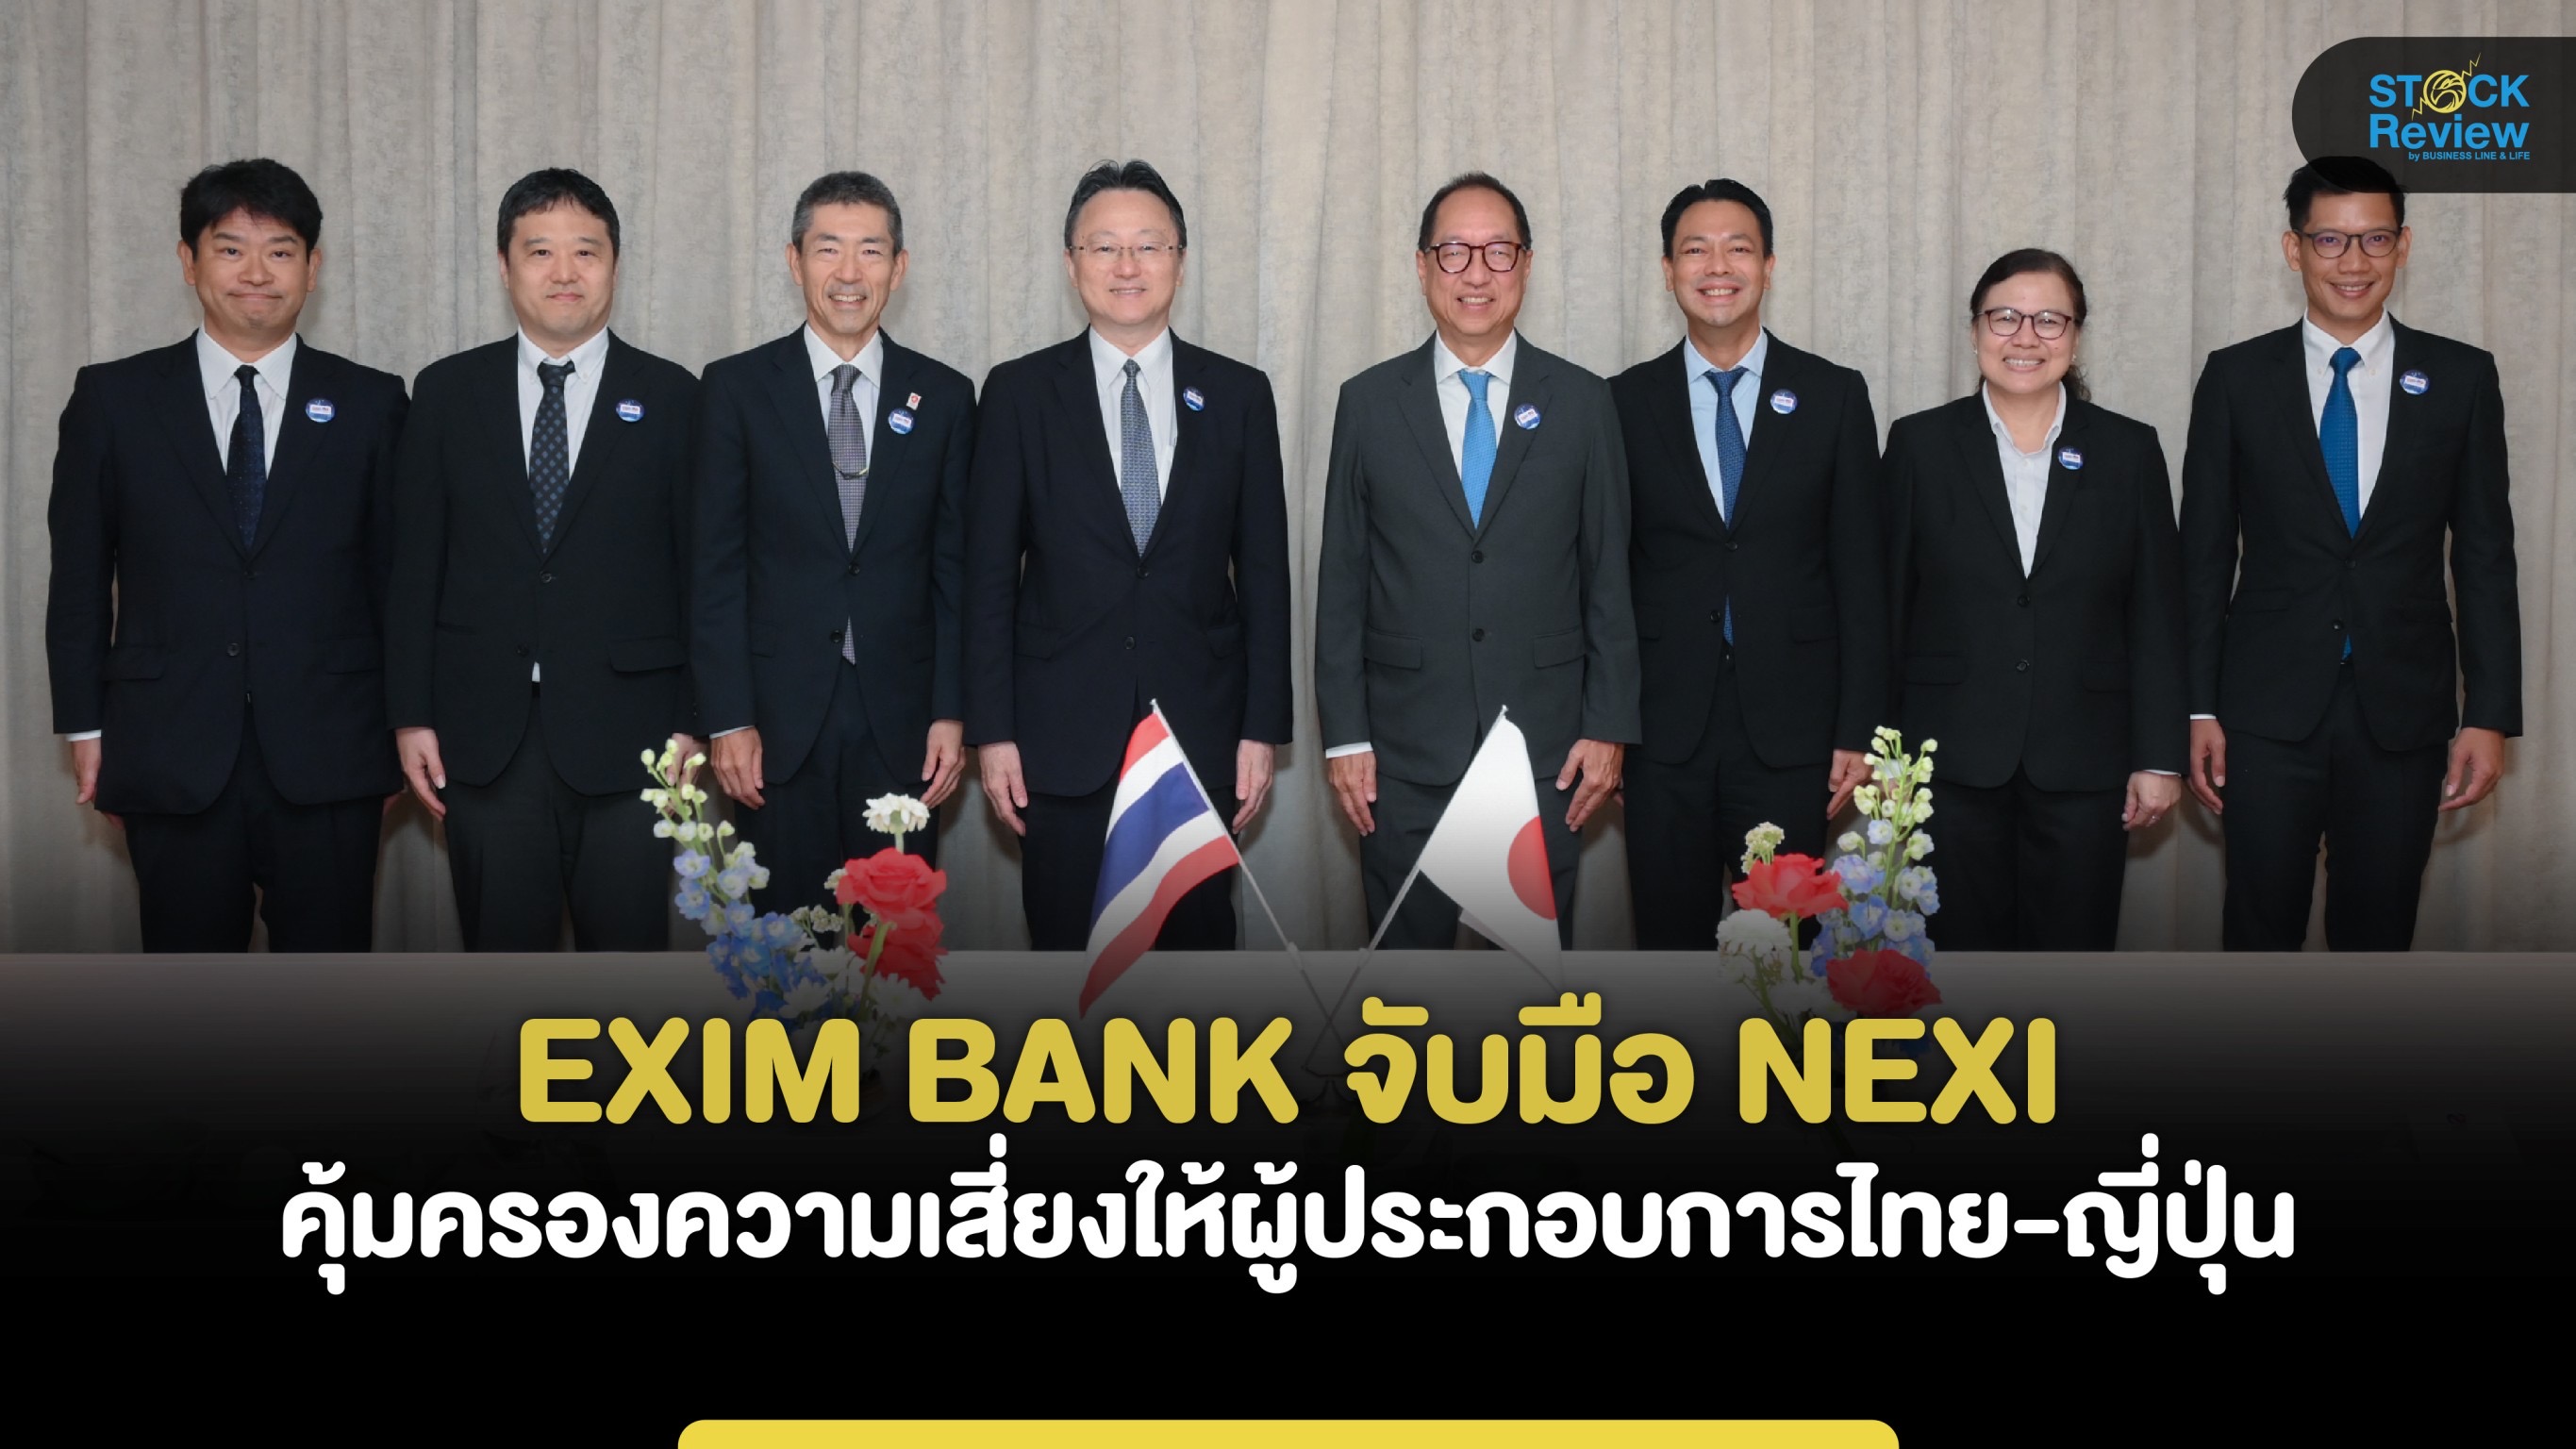 EXIM BANK จับมือ NEXI คุ้มครองความเสี่ยงให้ผู้ประกอบการไทย-ญี่ปุ่น